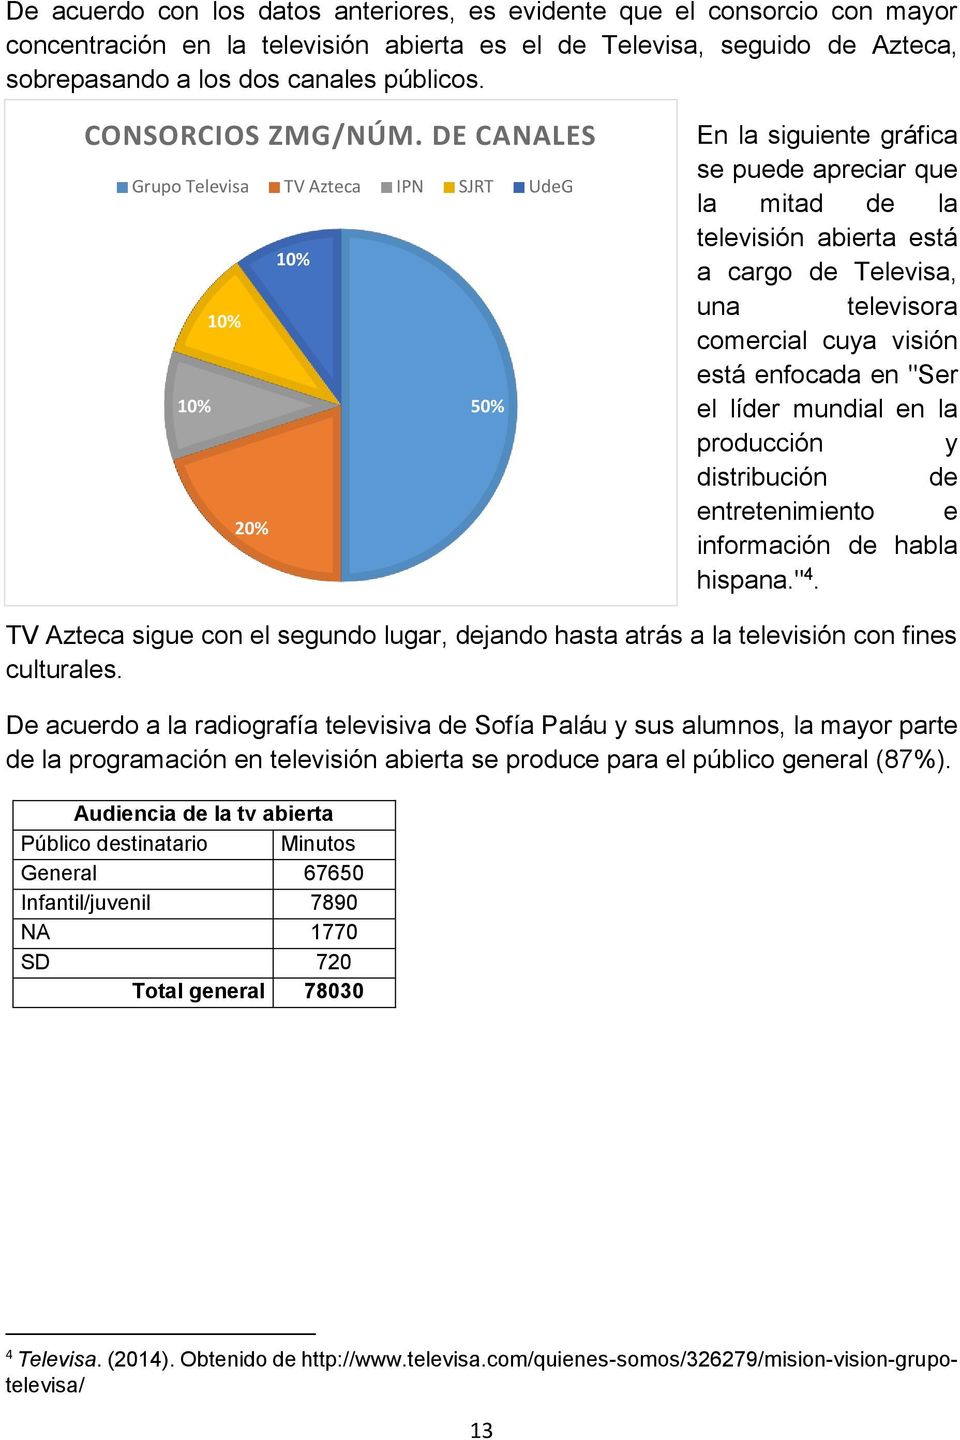 DE CANALES Grupo Televisa TV Azteca IPN SJRT UdeG 10% 10% 10% 50% 20% En la siguiente gráfica se puede apreciar que la mitad de la televisión abierta está a cargo de Televisa, una televisora